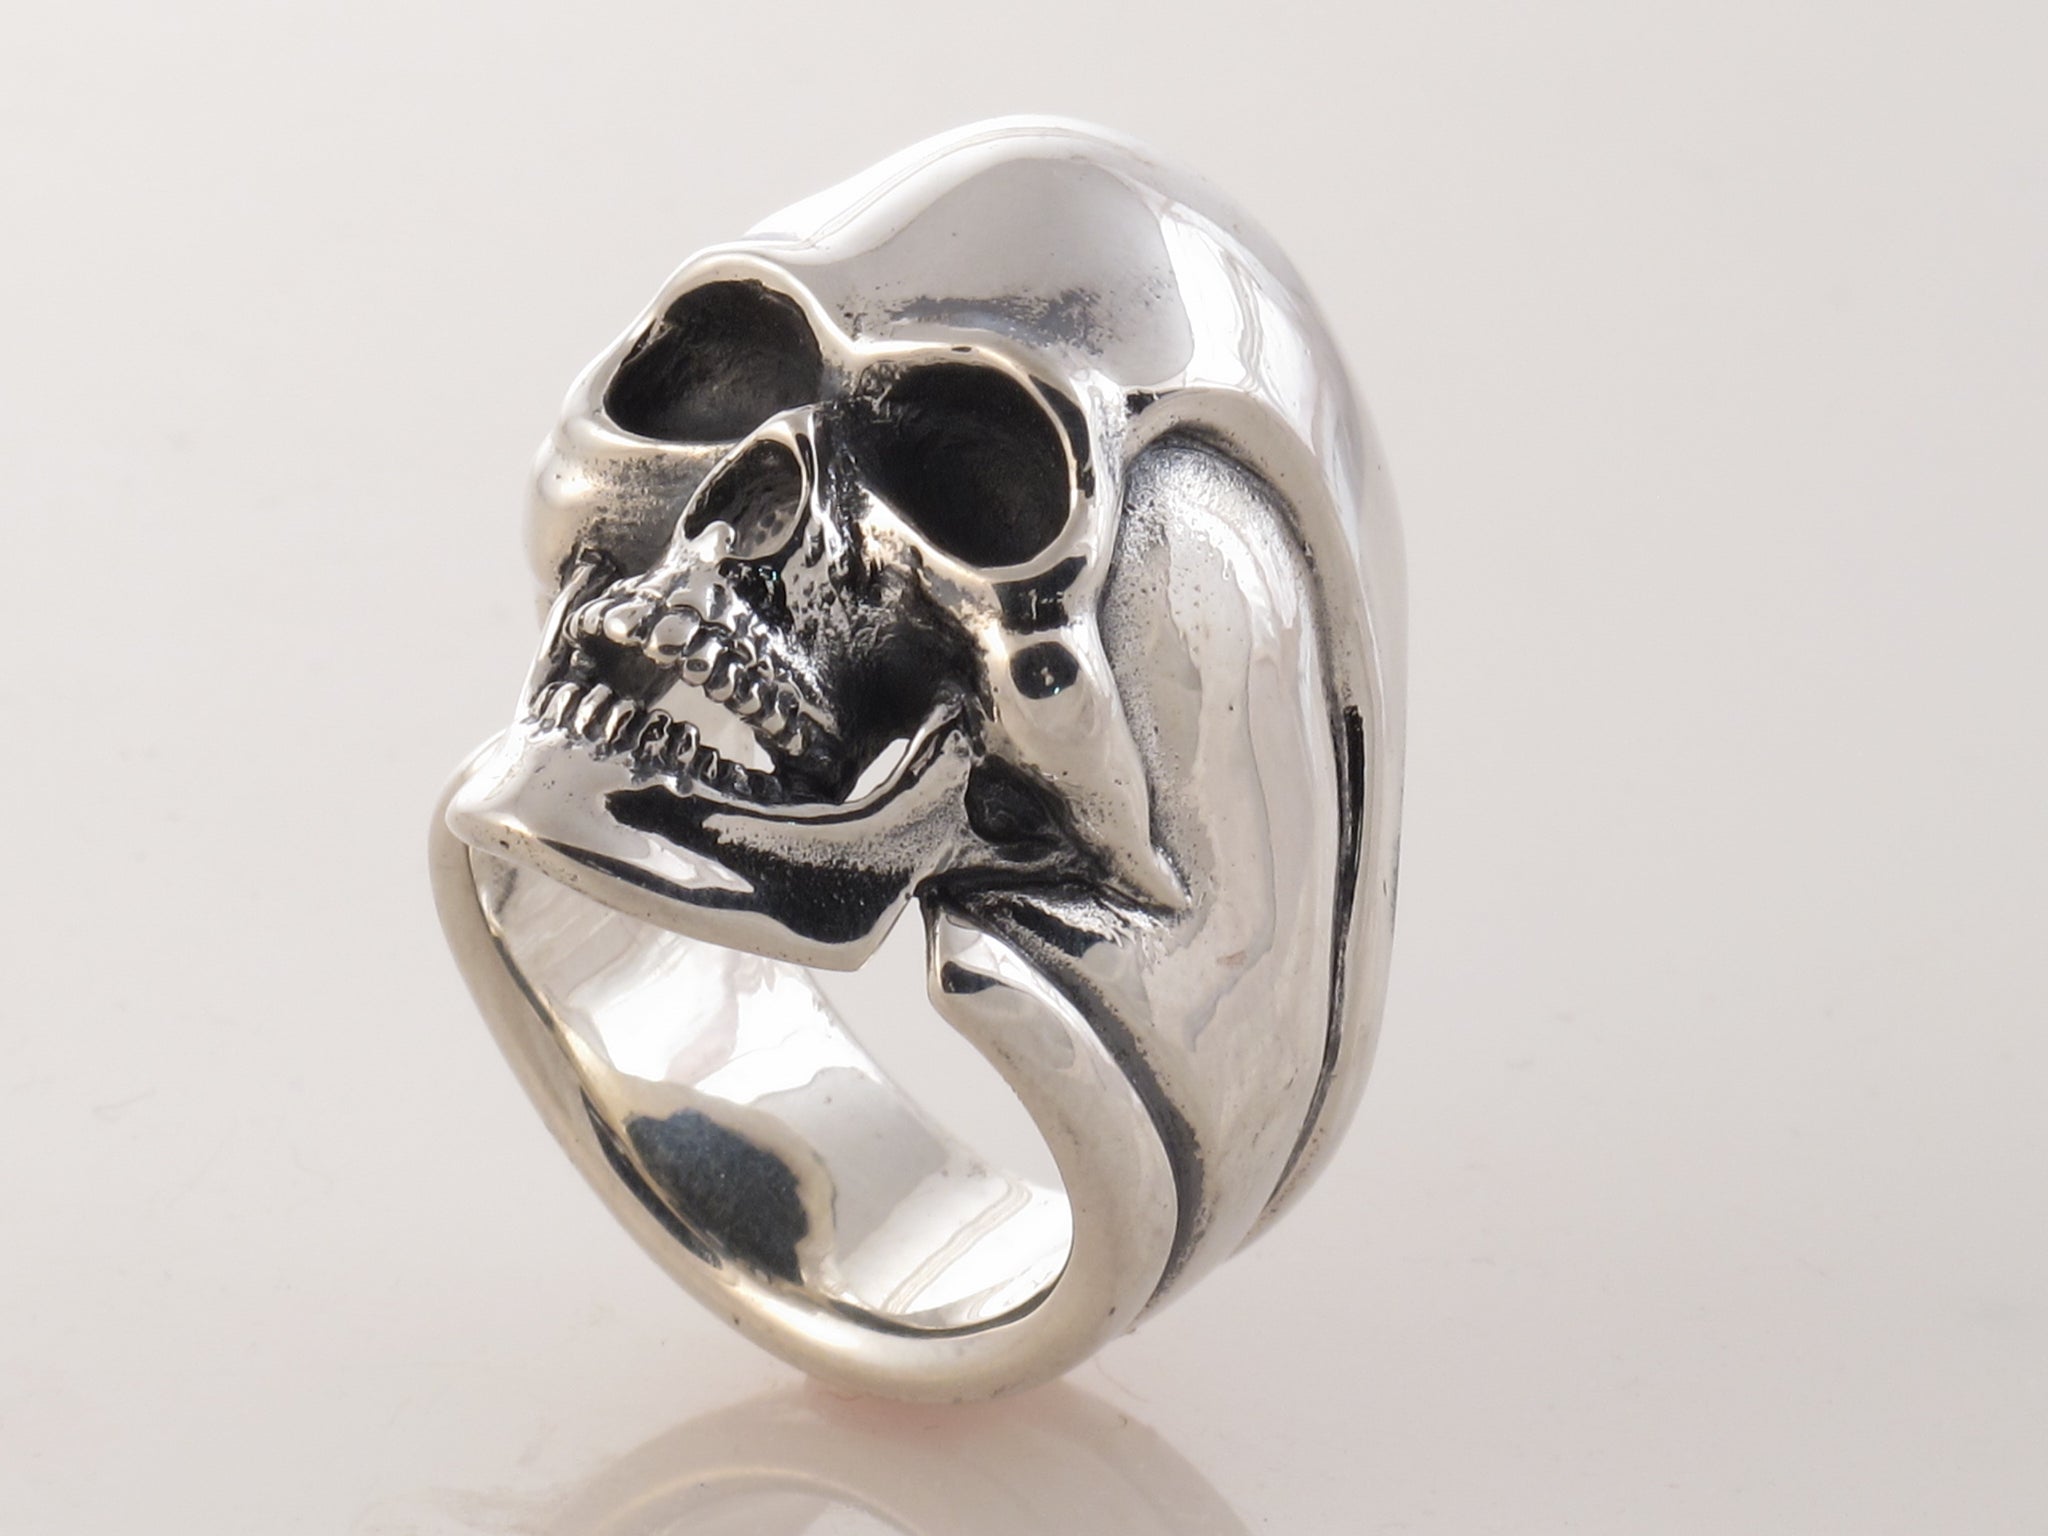 The skull ring